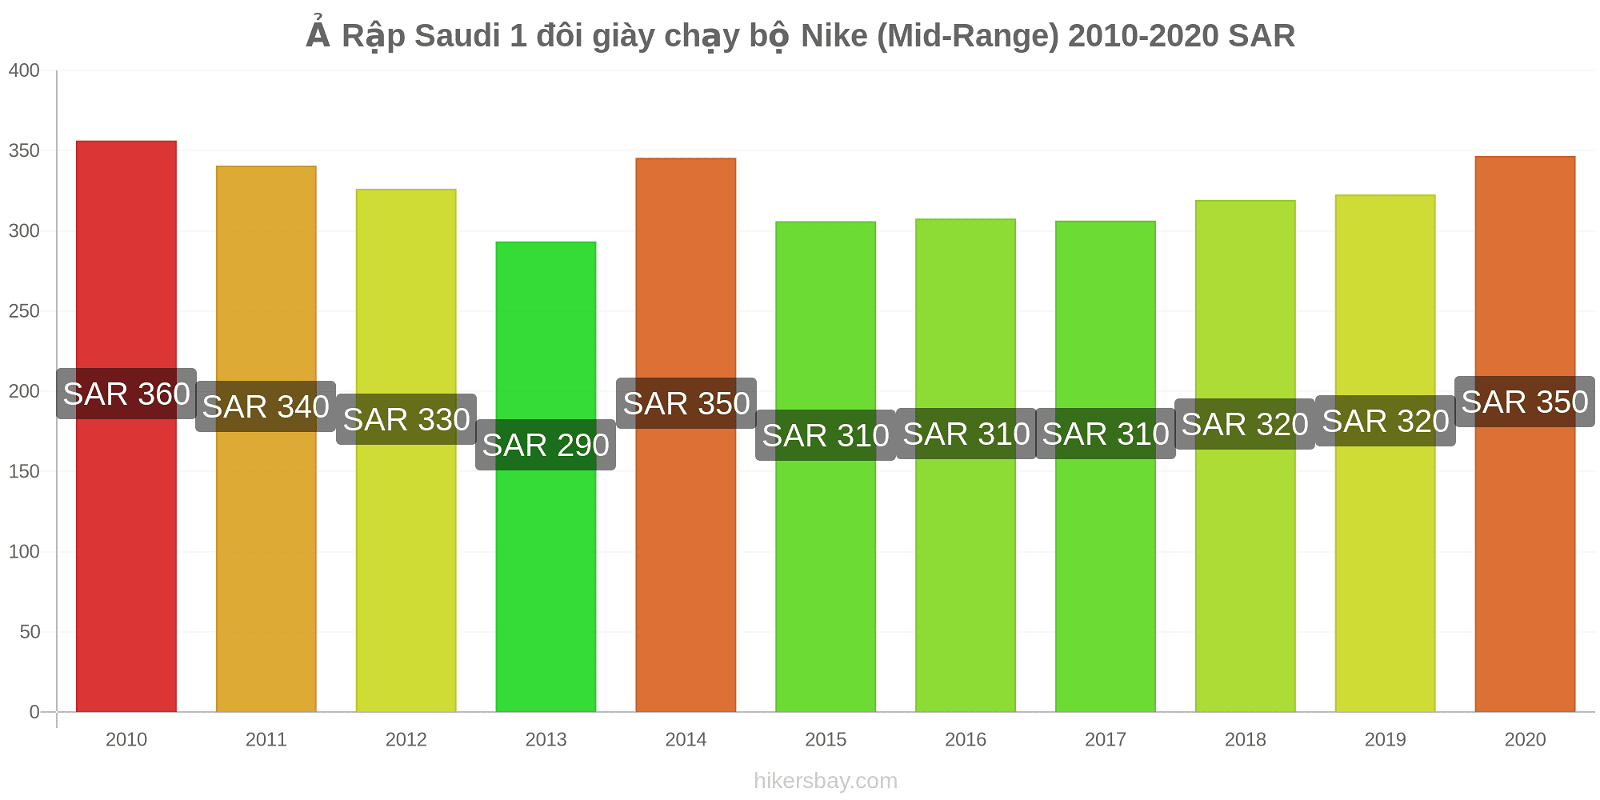 Ả Rập Saudi thay đổi giá 1 đôi giày chạy bộ Nike (Mid-Range) hikersbay.com